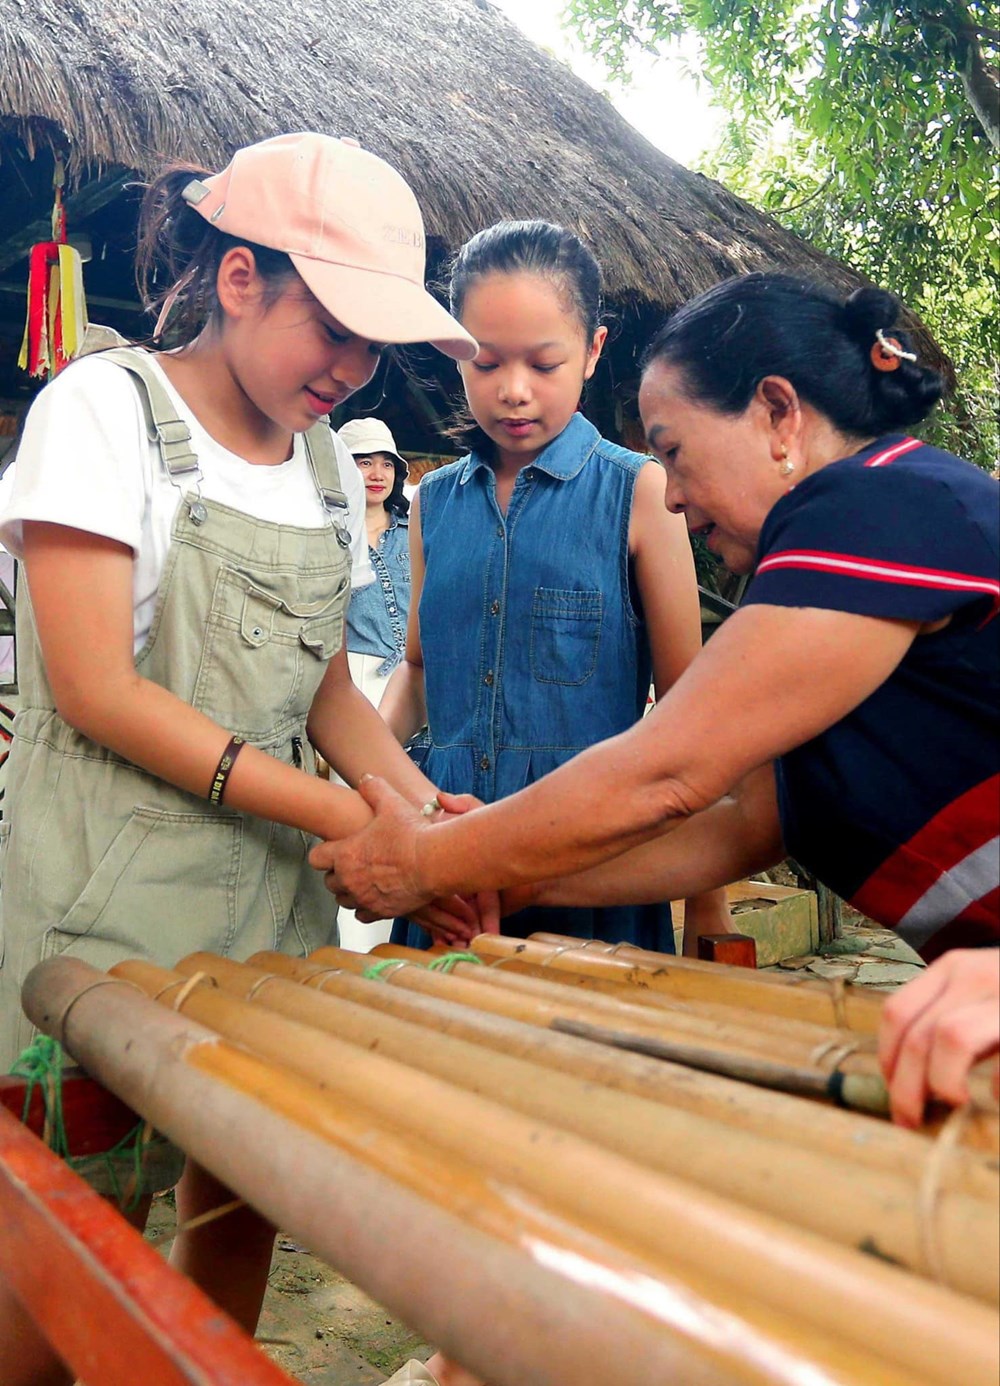 Người gìn giữ, quảng bá di sản văn hóa và đoàn kết cộng đồng trong  “Ngôi nhà chung” của cộng đồng 54 dân tộc Việt Nam - ảnh 11